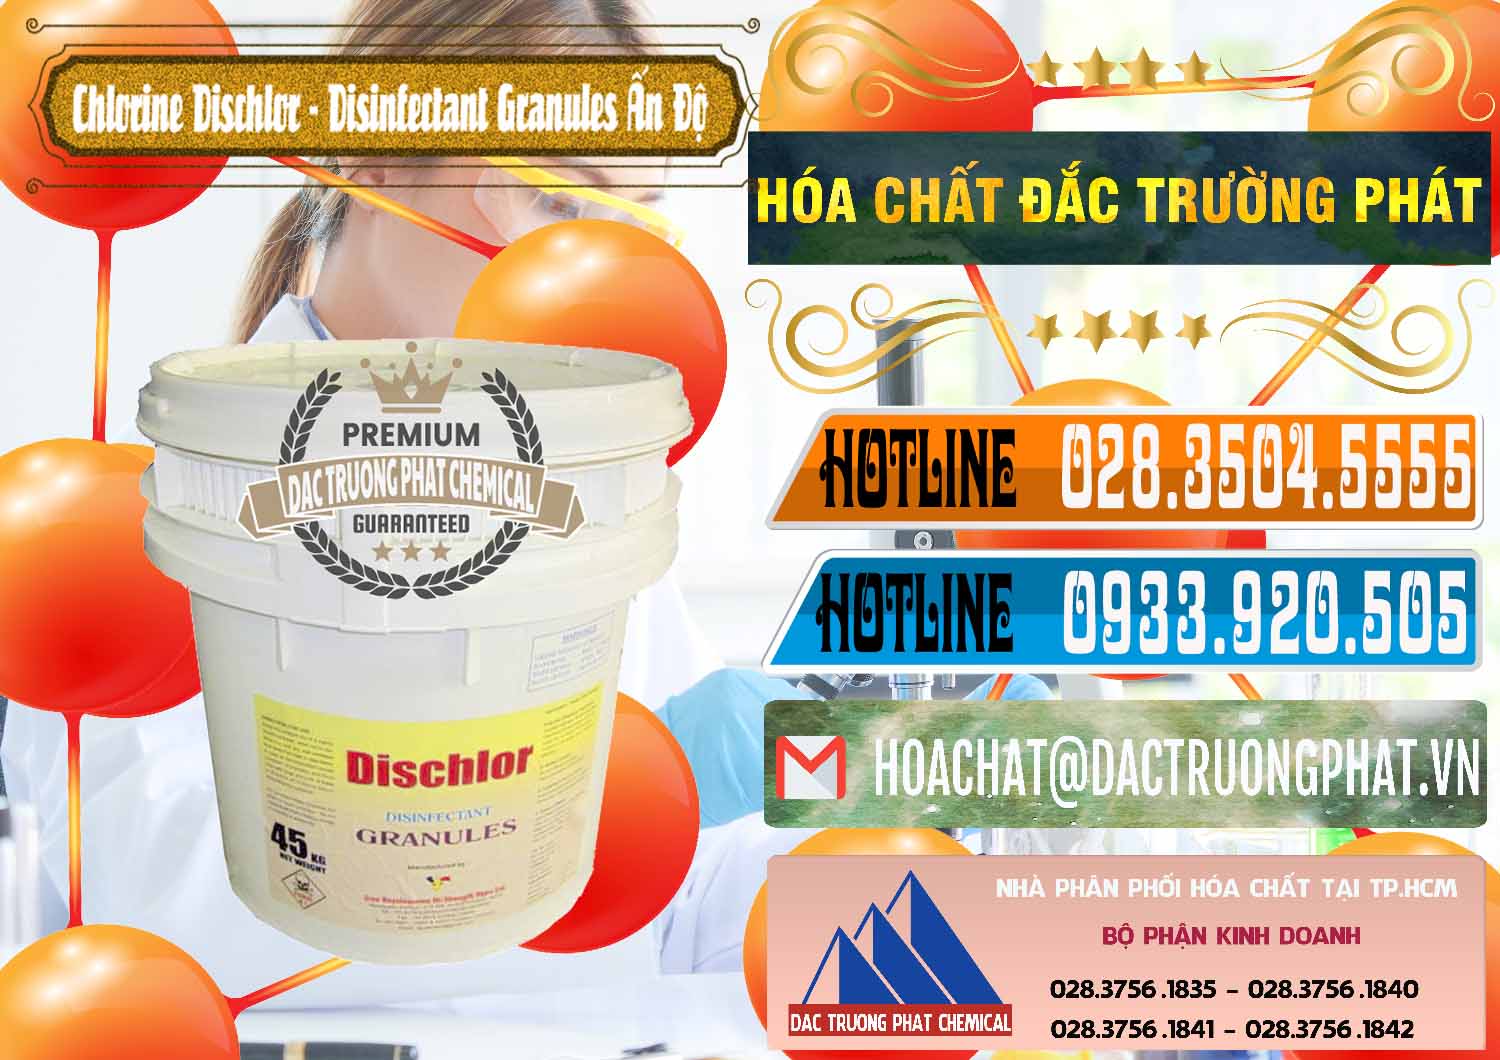 Nơi chuyên nhập khẩu _ bán Chlorine – Clorin 70% Dischlor - Disinfectant Granules Ấn Độ India - 0248 - Cung cấp - kinh doanh hóa chất tại TP.HCM - stmp.net